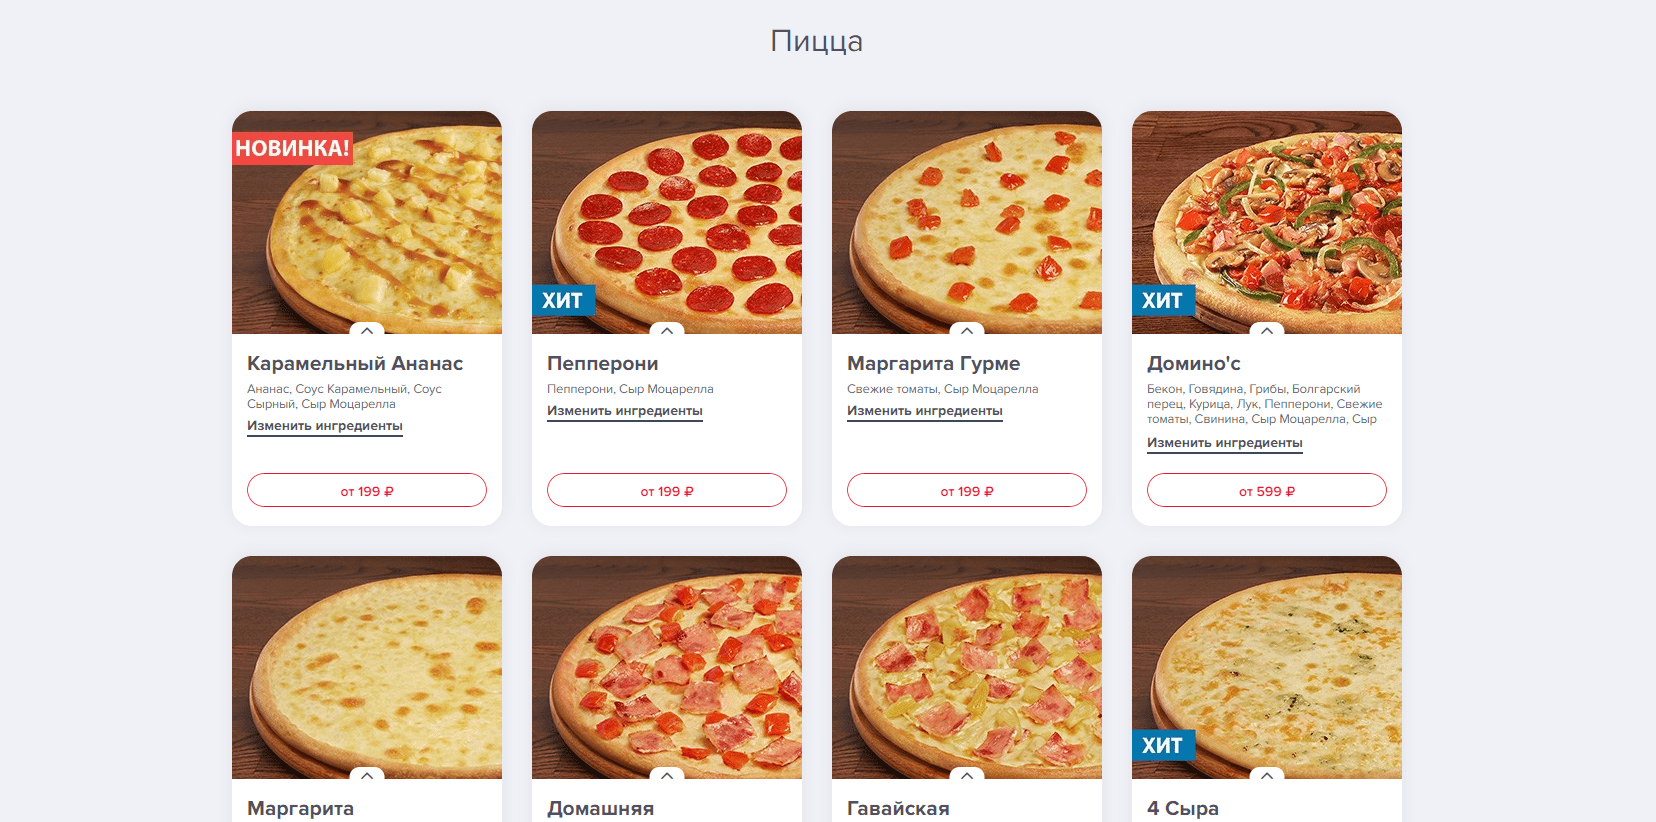 сколько калорий в одном куске пицца маргарита фото 53